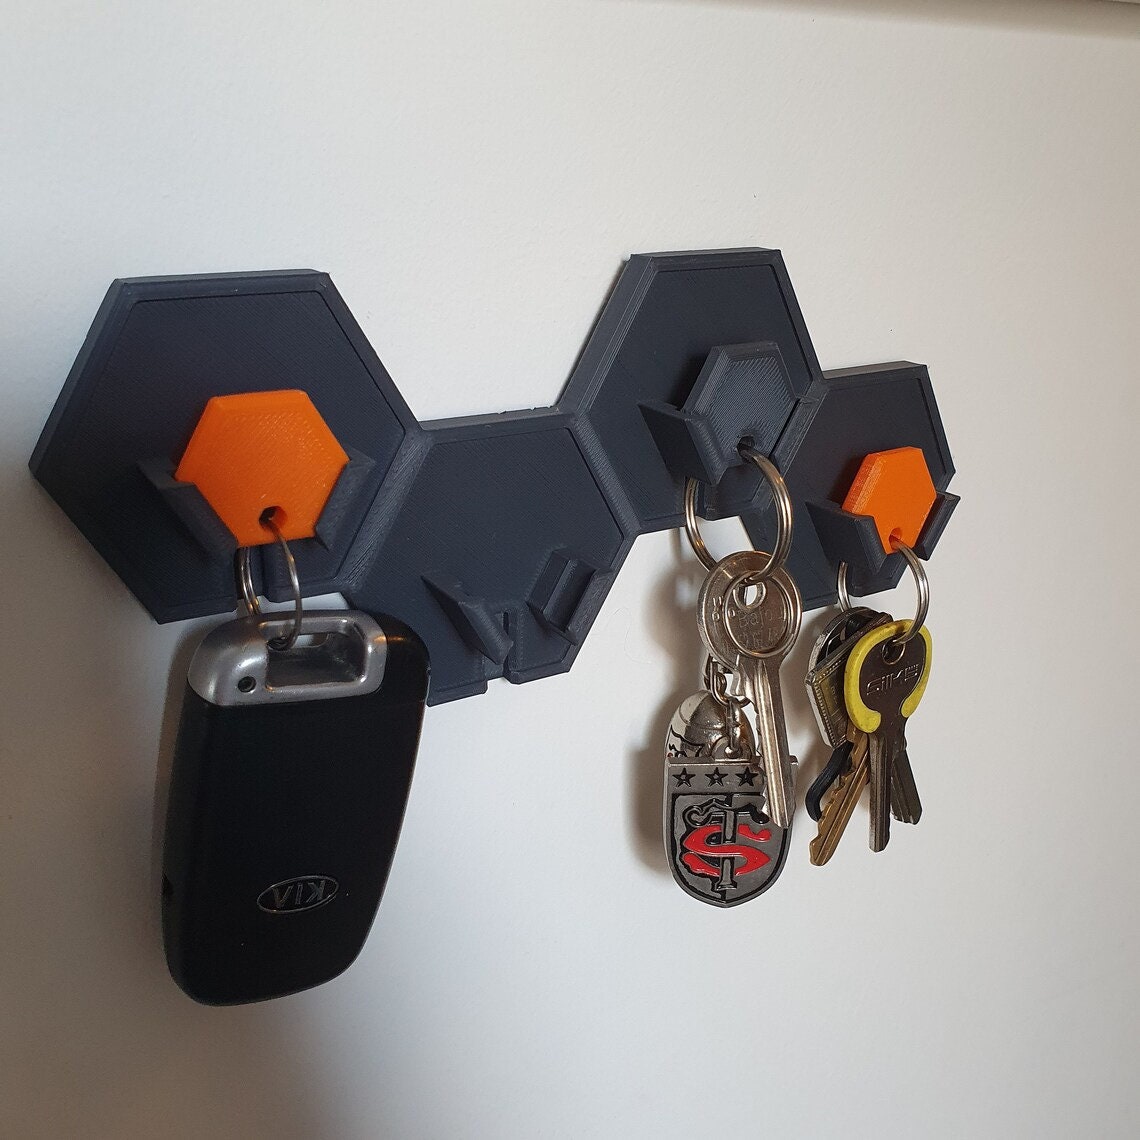 STL-Datei Halterung für Schlüssel und Kleinigkeiten an der Wand